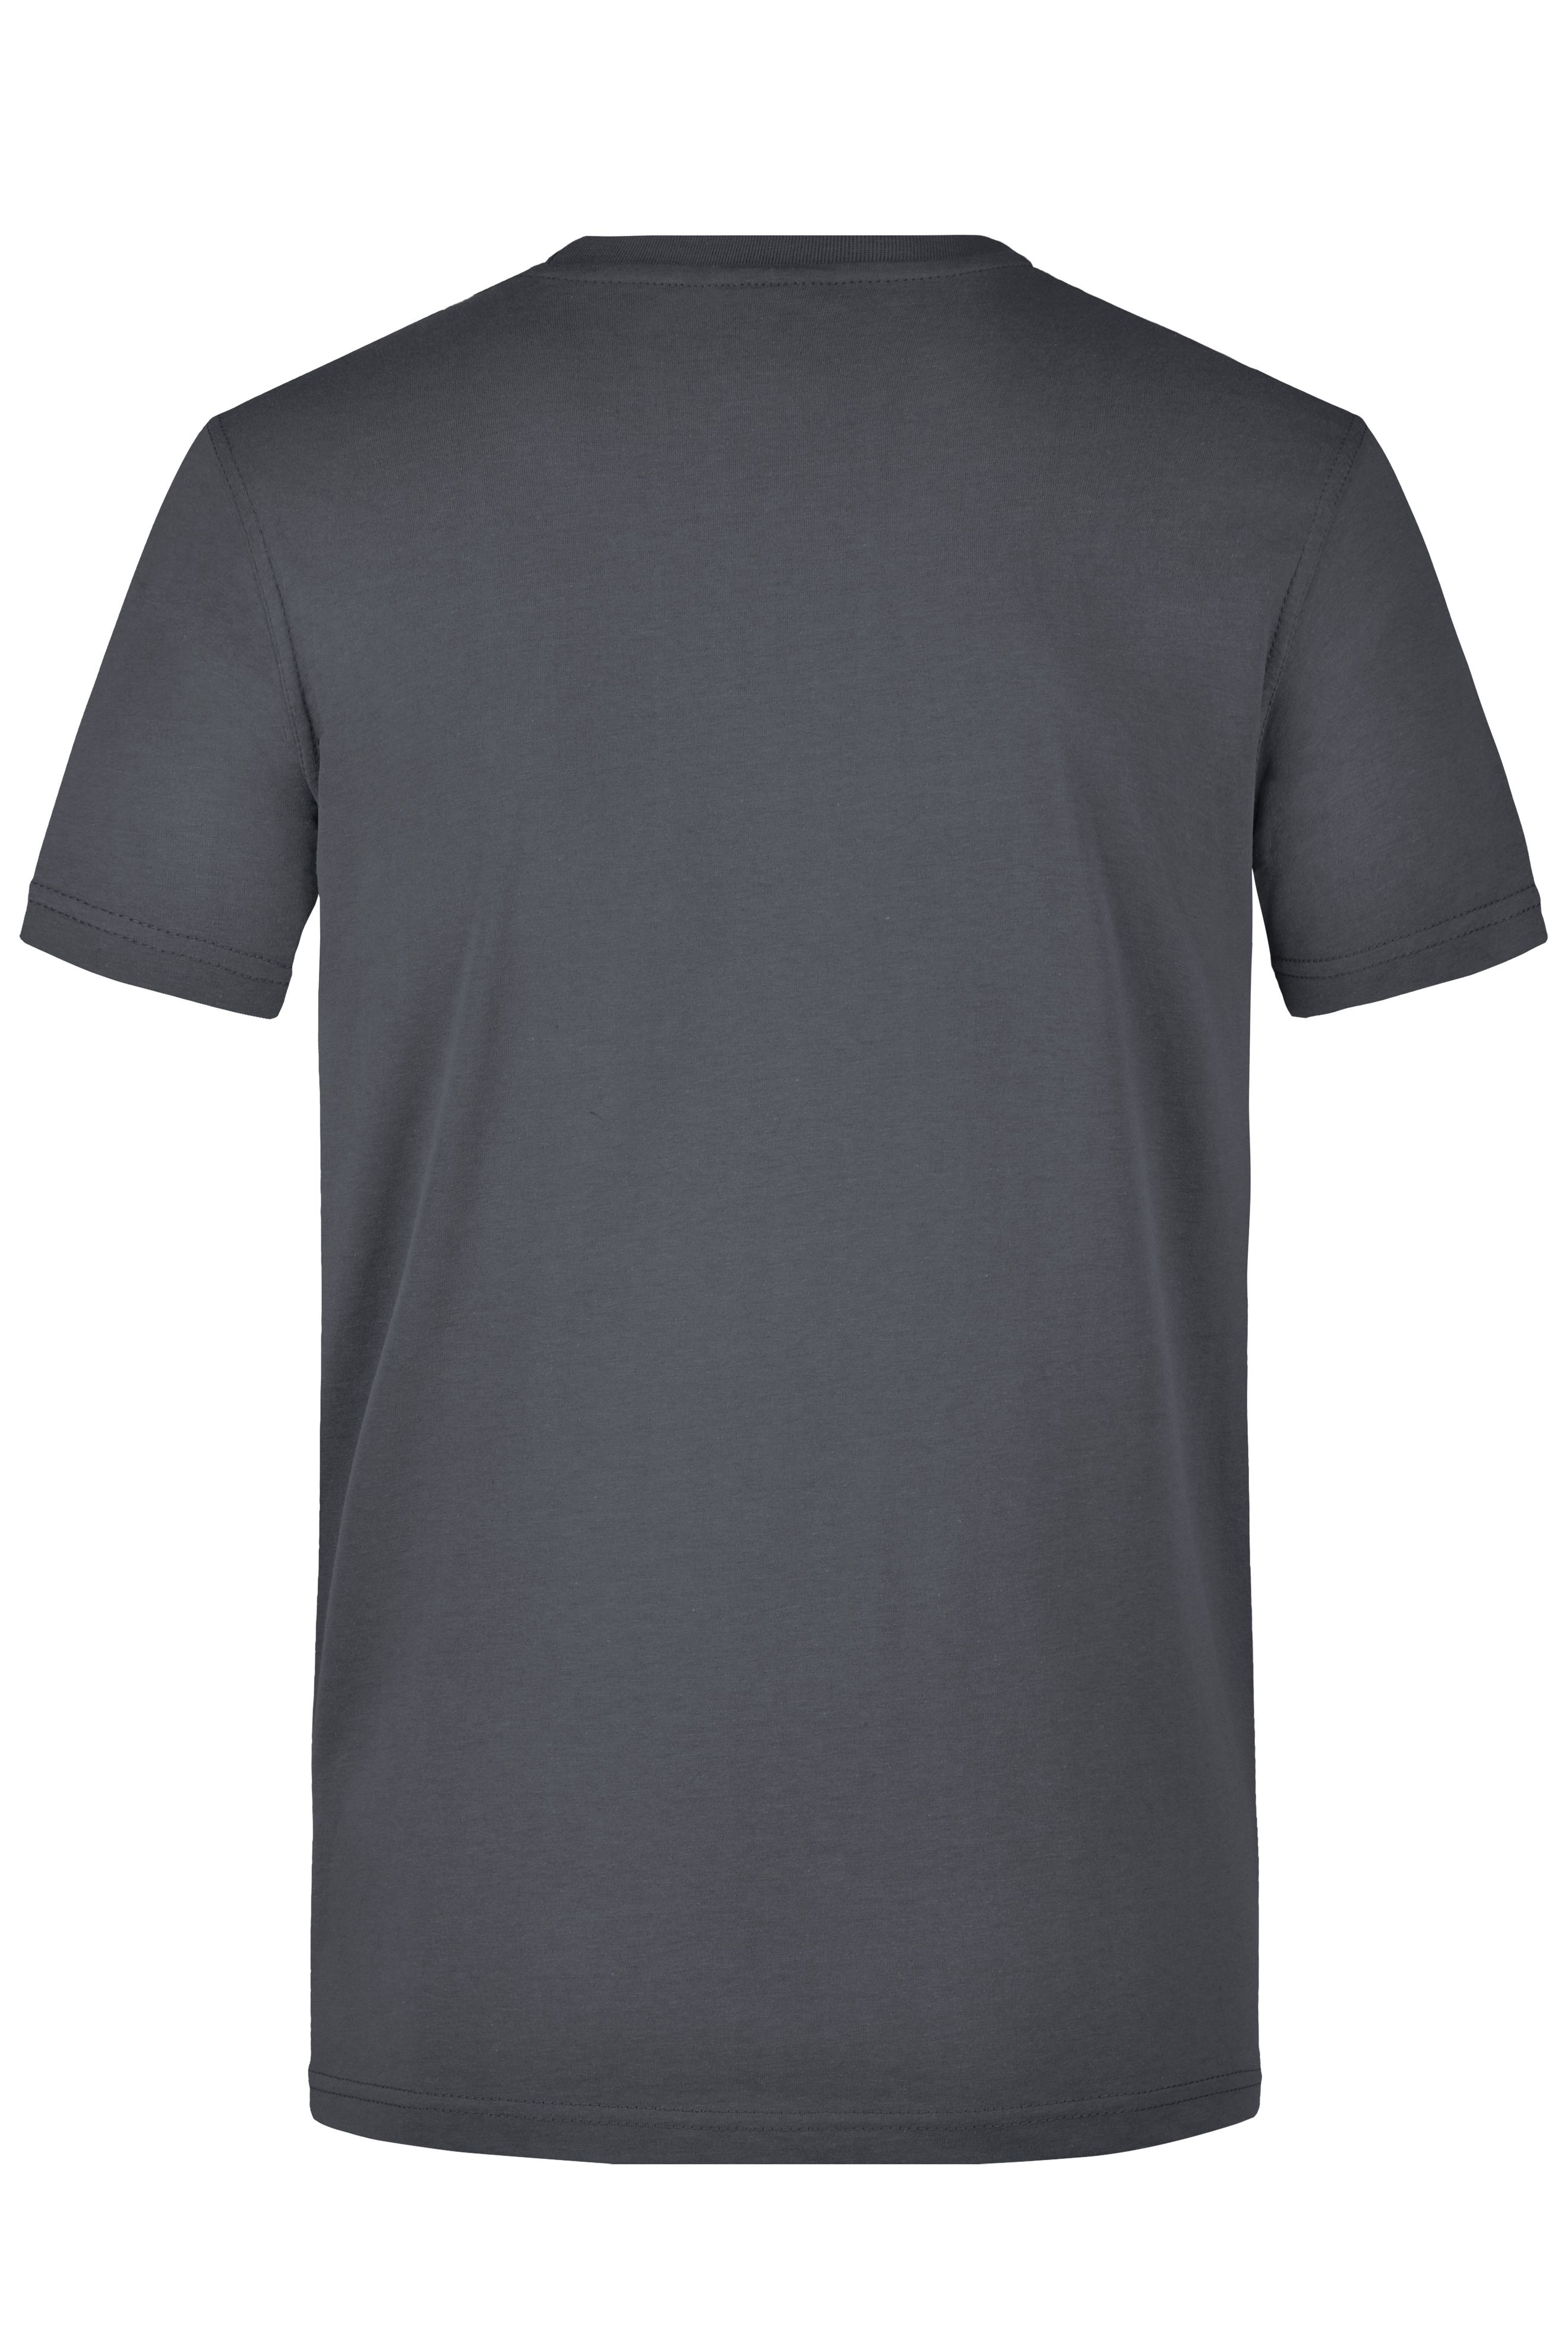 Men's Workwear T-Shirt JN838 Strapazierfähiges und pflegeleichtes T-Shirt